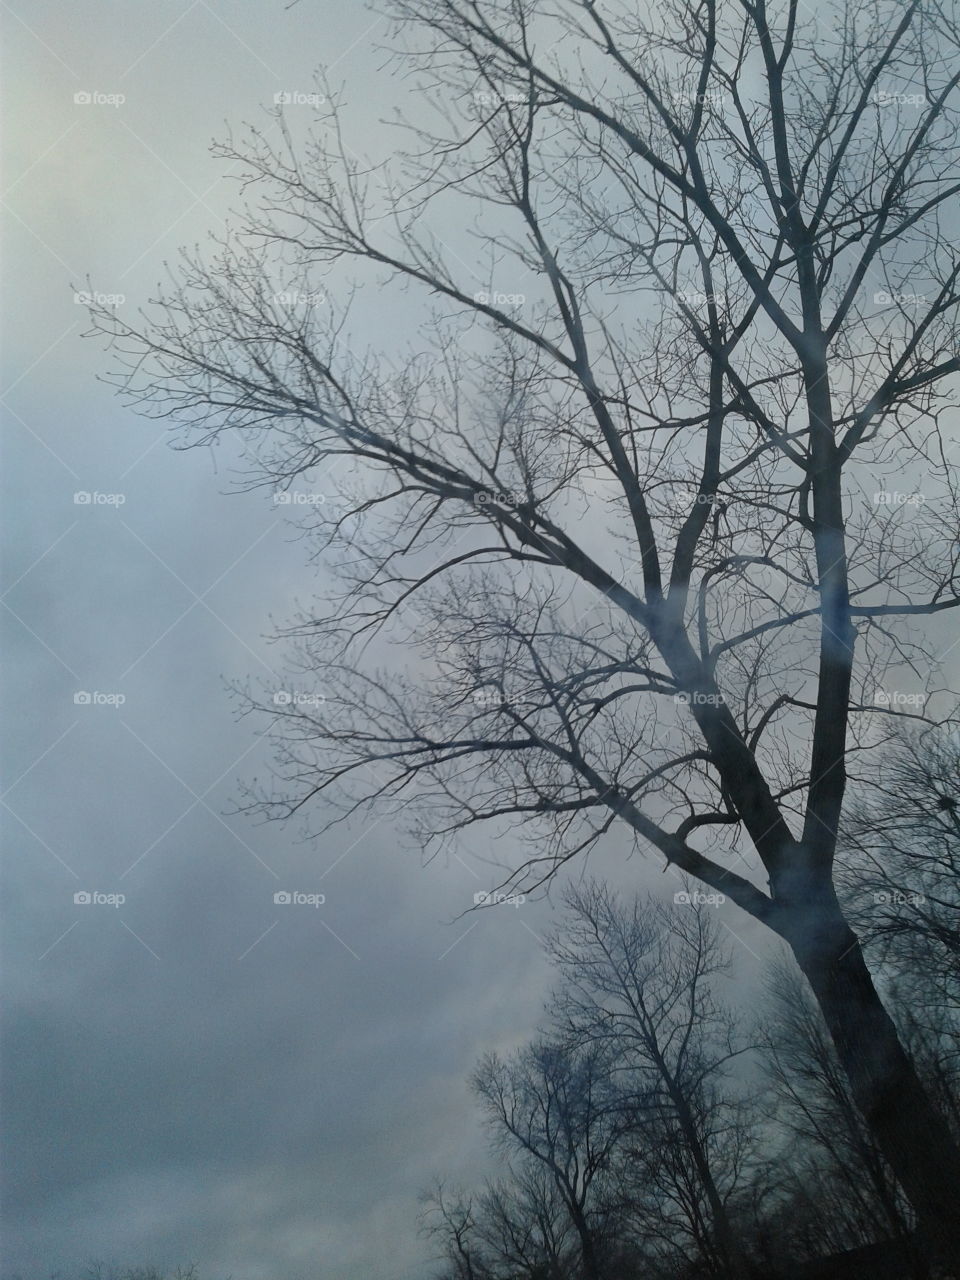 Fog Tree and Blue Skies